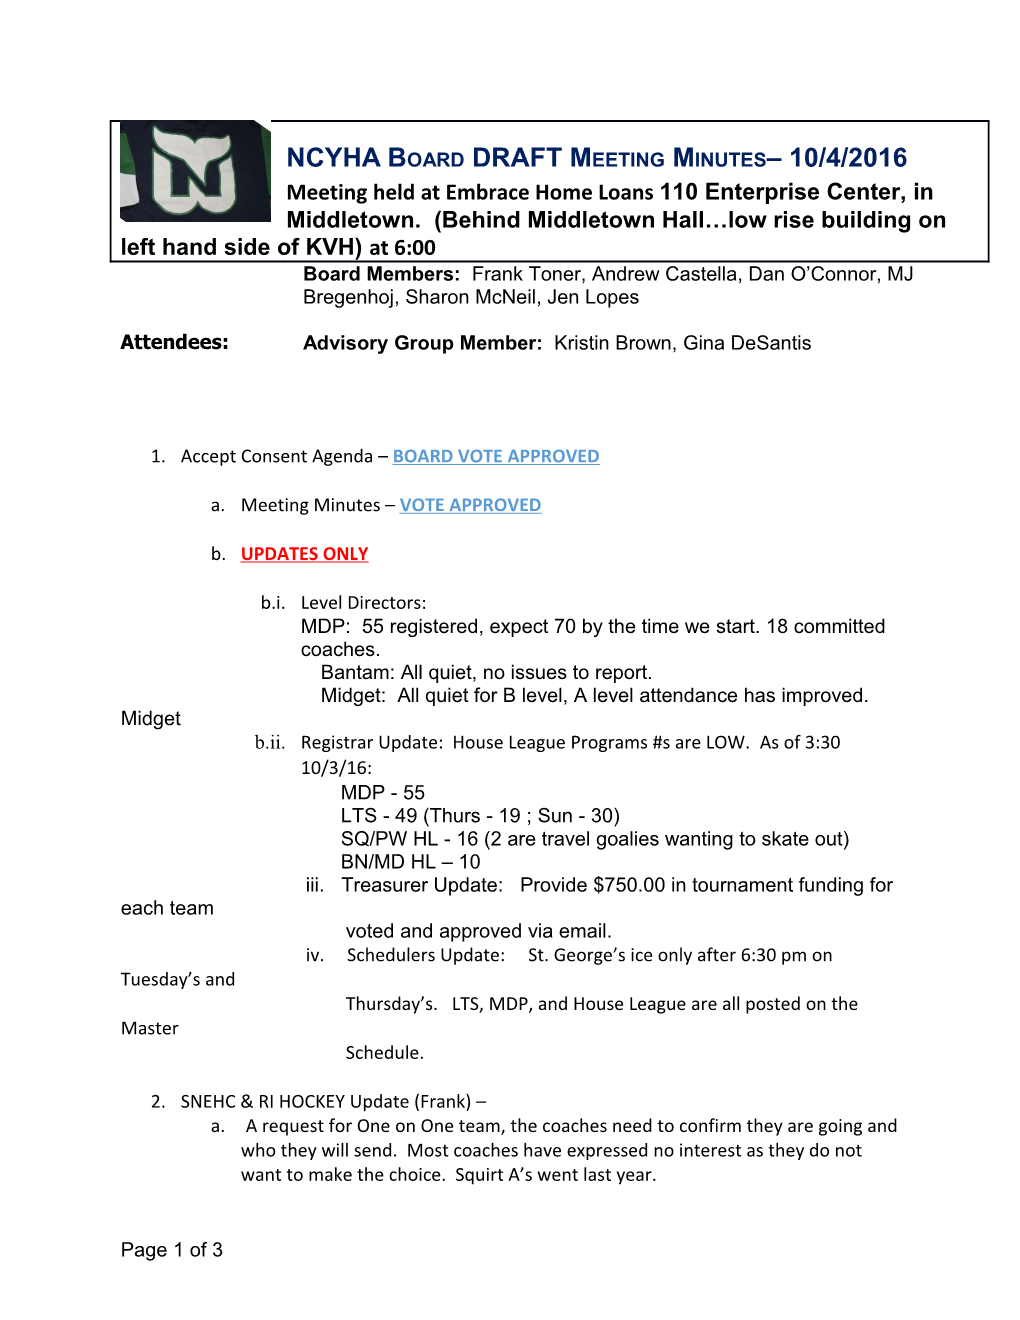 NCYHA Board DRAFT Meeting Minutes 10/4/2016